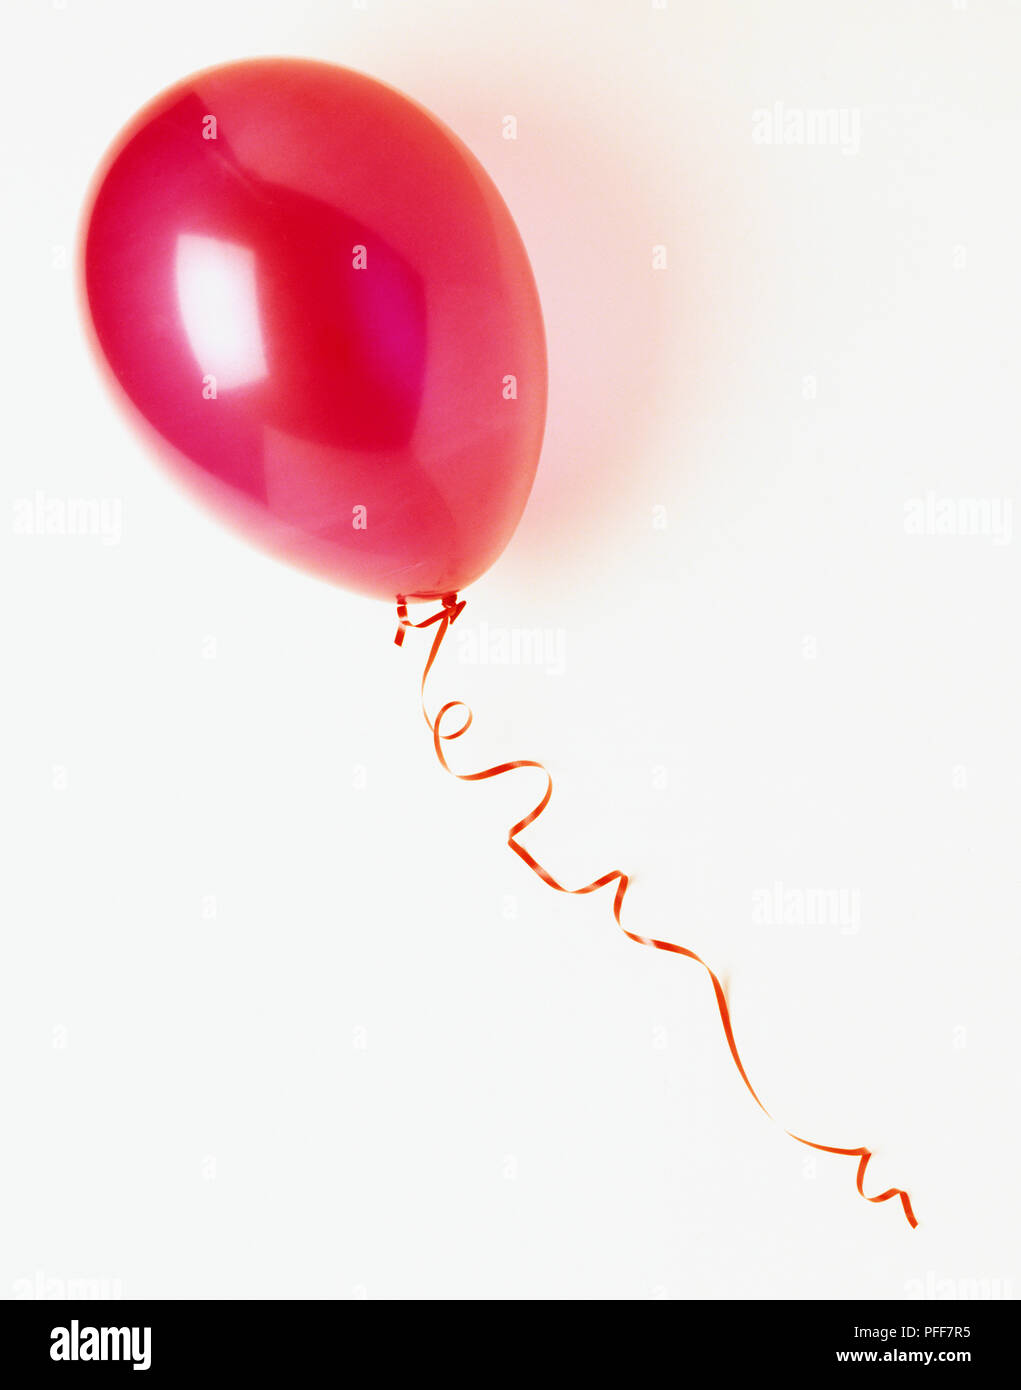 Gonfiato il palloncino rosso con nastro, vista in elevazione. Foto Stock